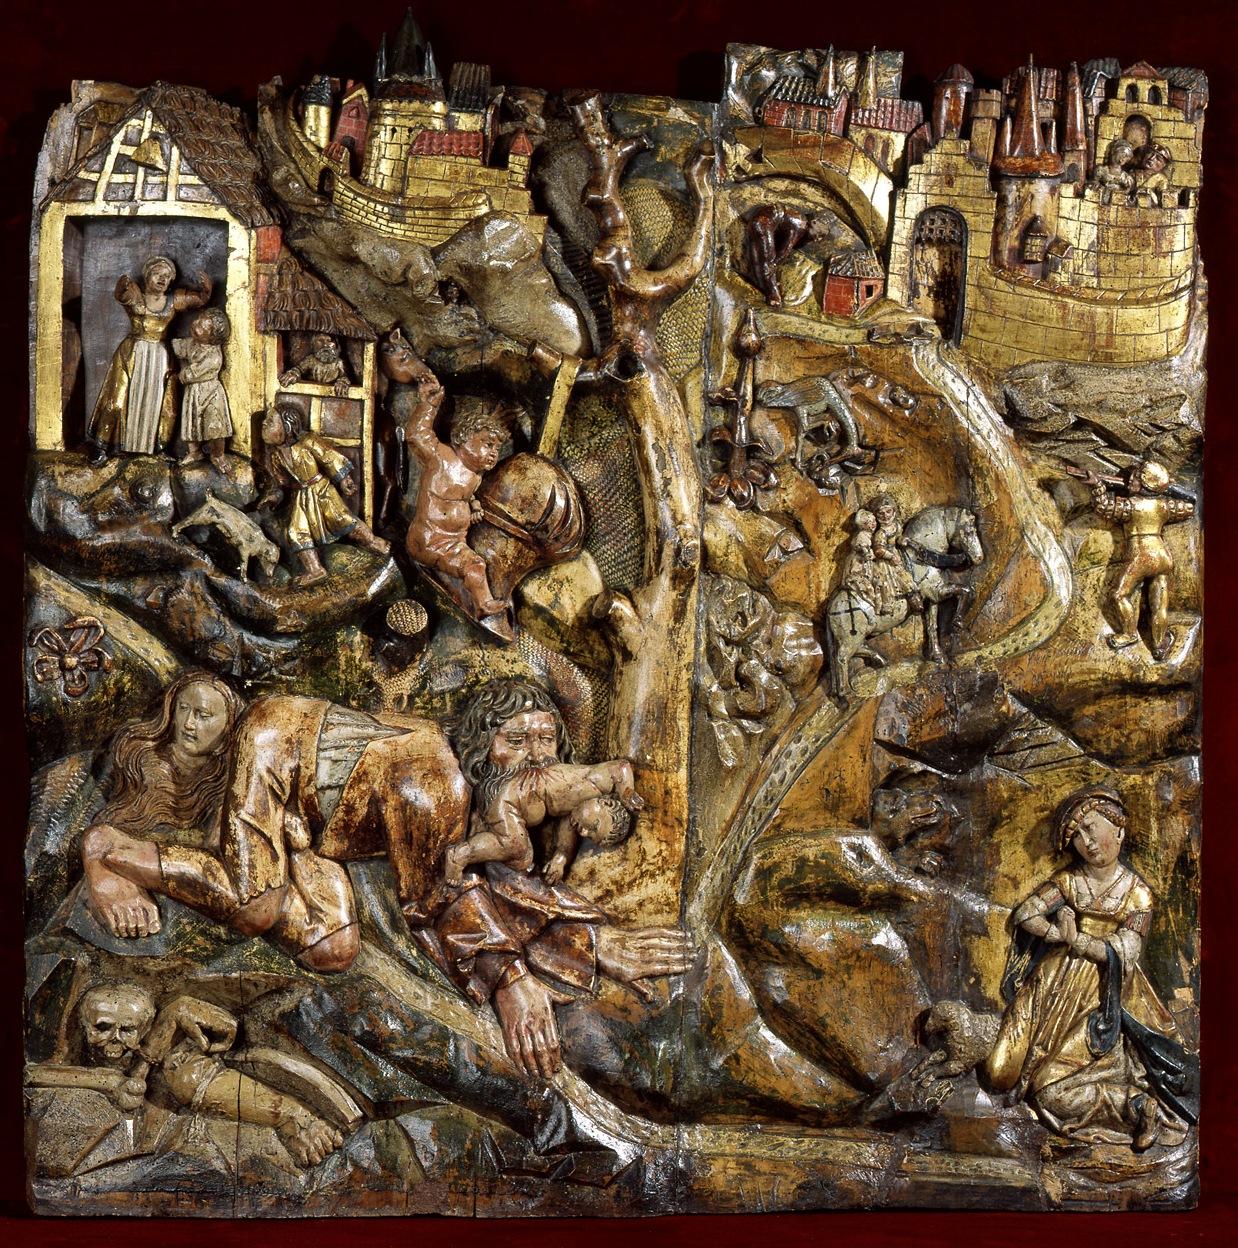 Exceptionnel bas-relief en bois polychrome représentant un loup-garou et saint georges d'après une gravure sur bois de lucas cranach (